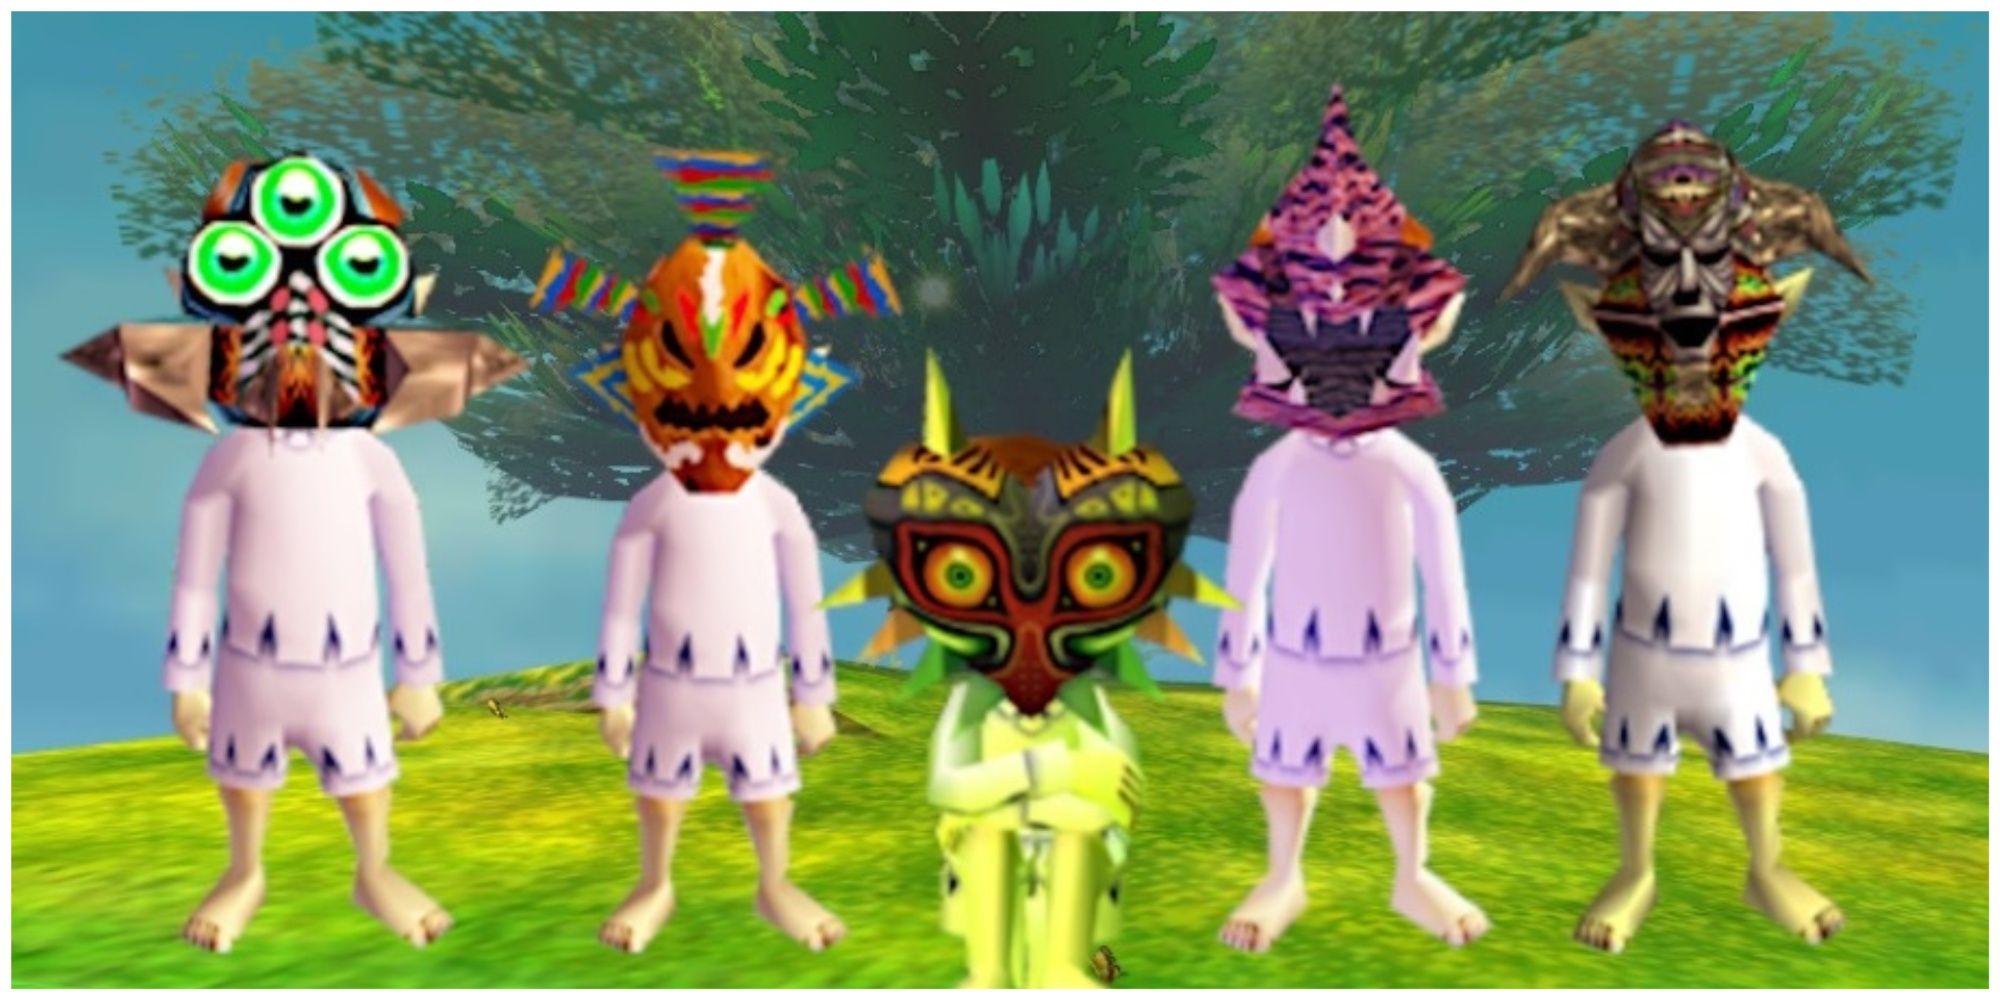 Moon Children in Legend of Zelda: Majora's Mask